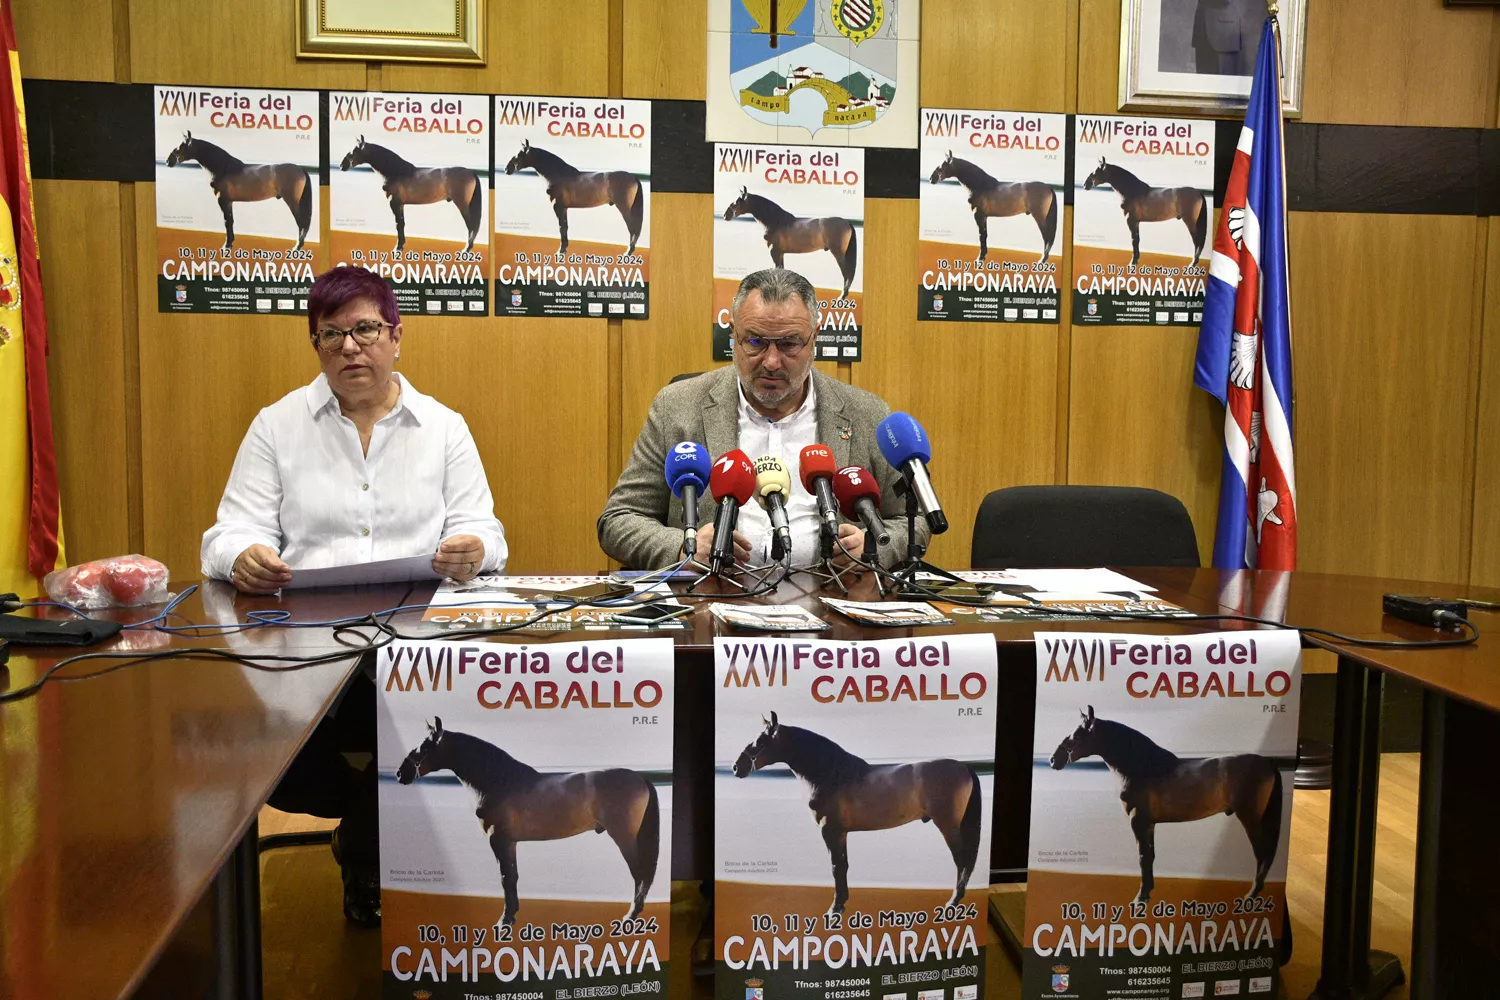 Camponaraya 'cabalga' hacia la XXVI Feria del Caballo con el objetivo de concitar a casi un centenar de ejemplares